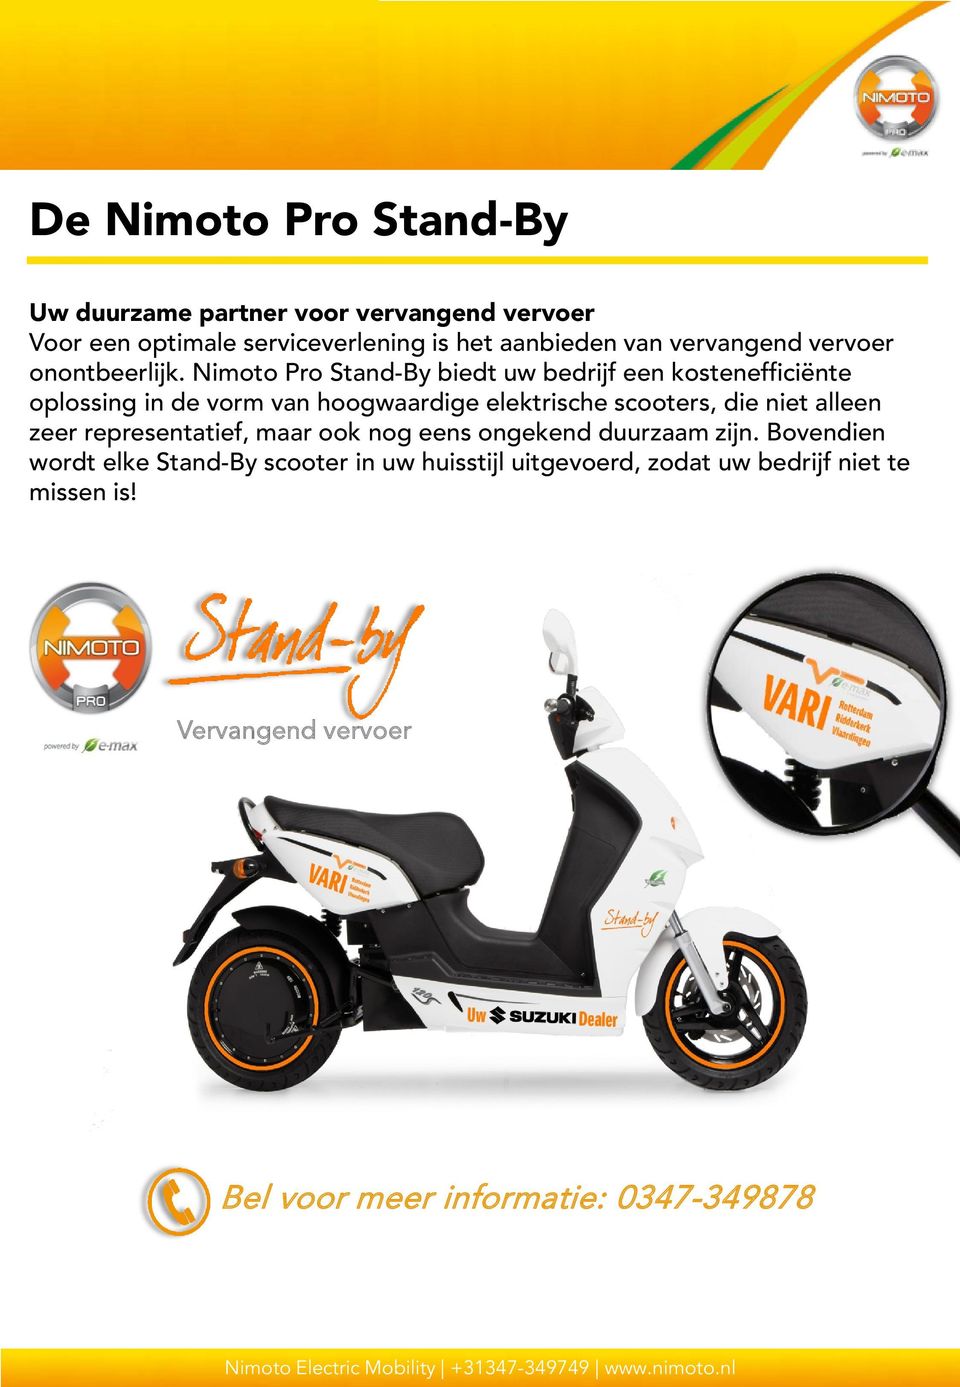 Nimoto Pro Stand-By biedt uw bedrijf een kostenefficiënte oplossing in de vorm van hoogwaardige elektrische scooters, die niet